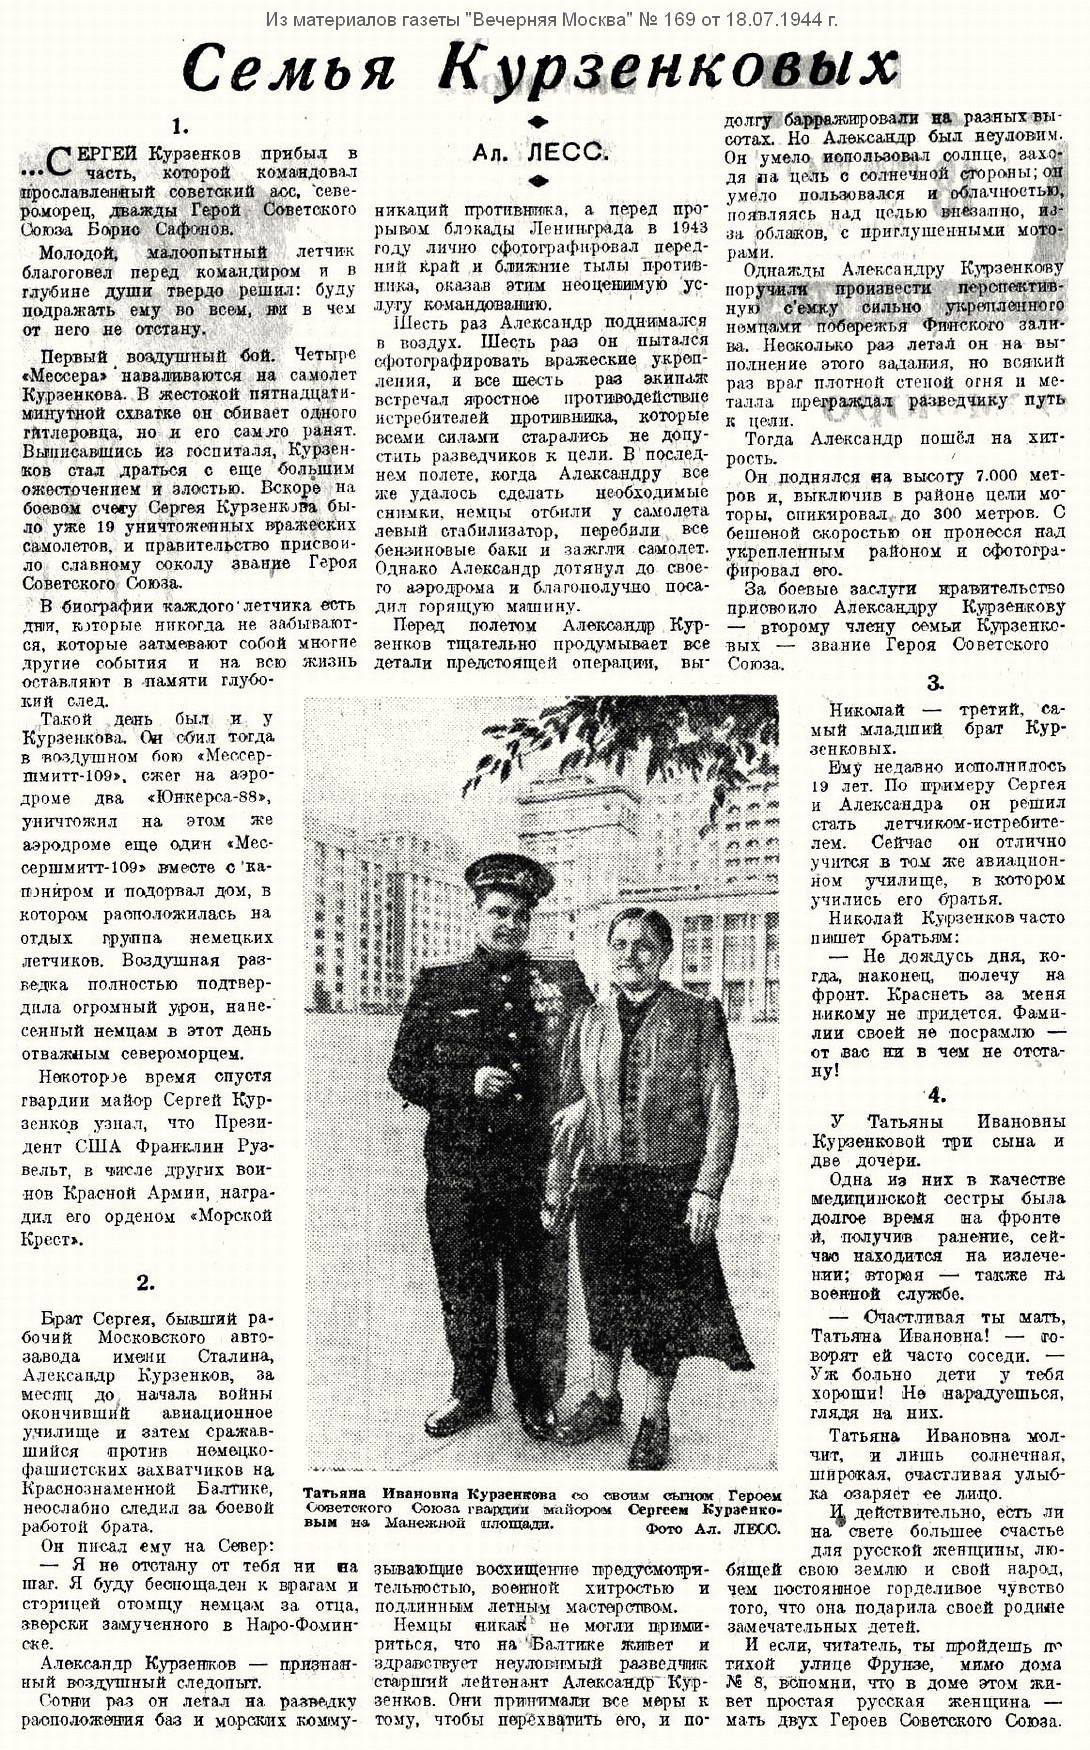 Из материалов прессы военных лет о С. Г. Курзенкове